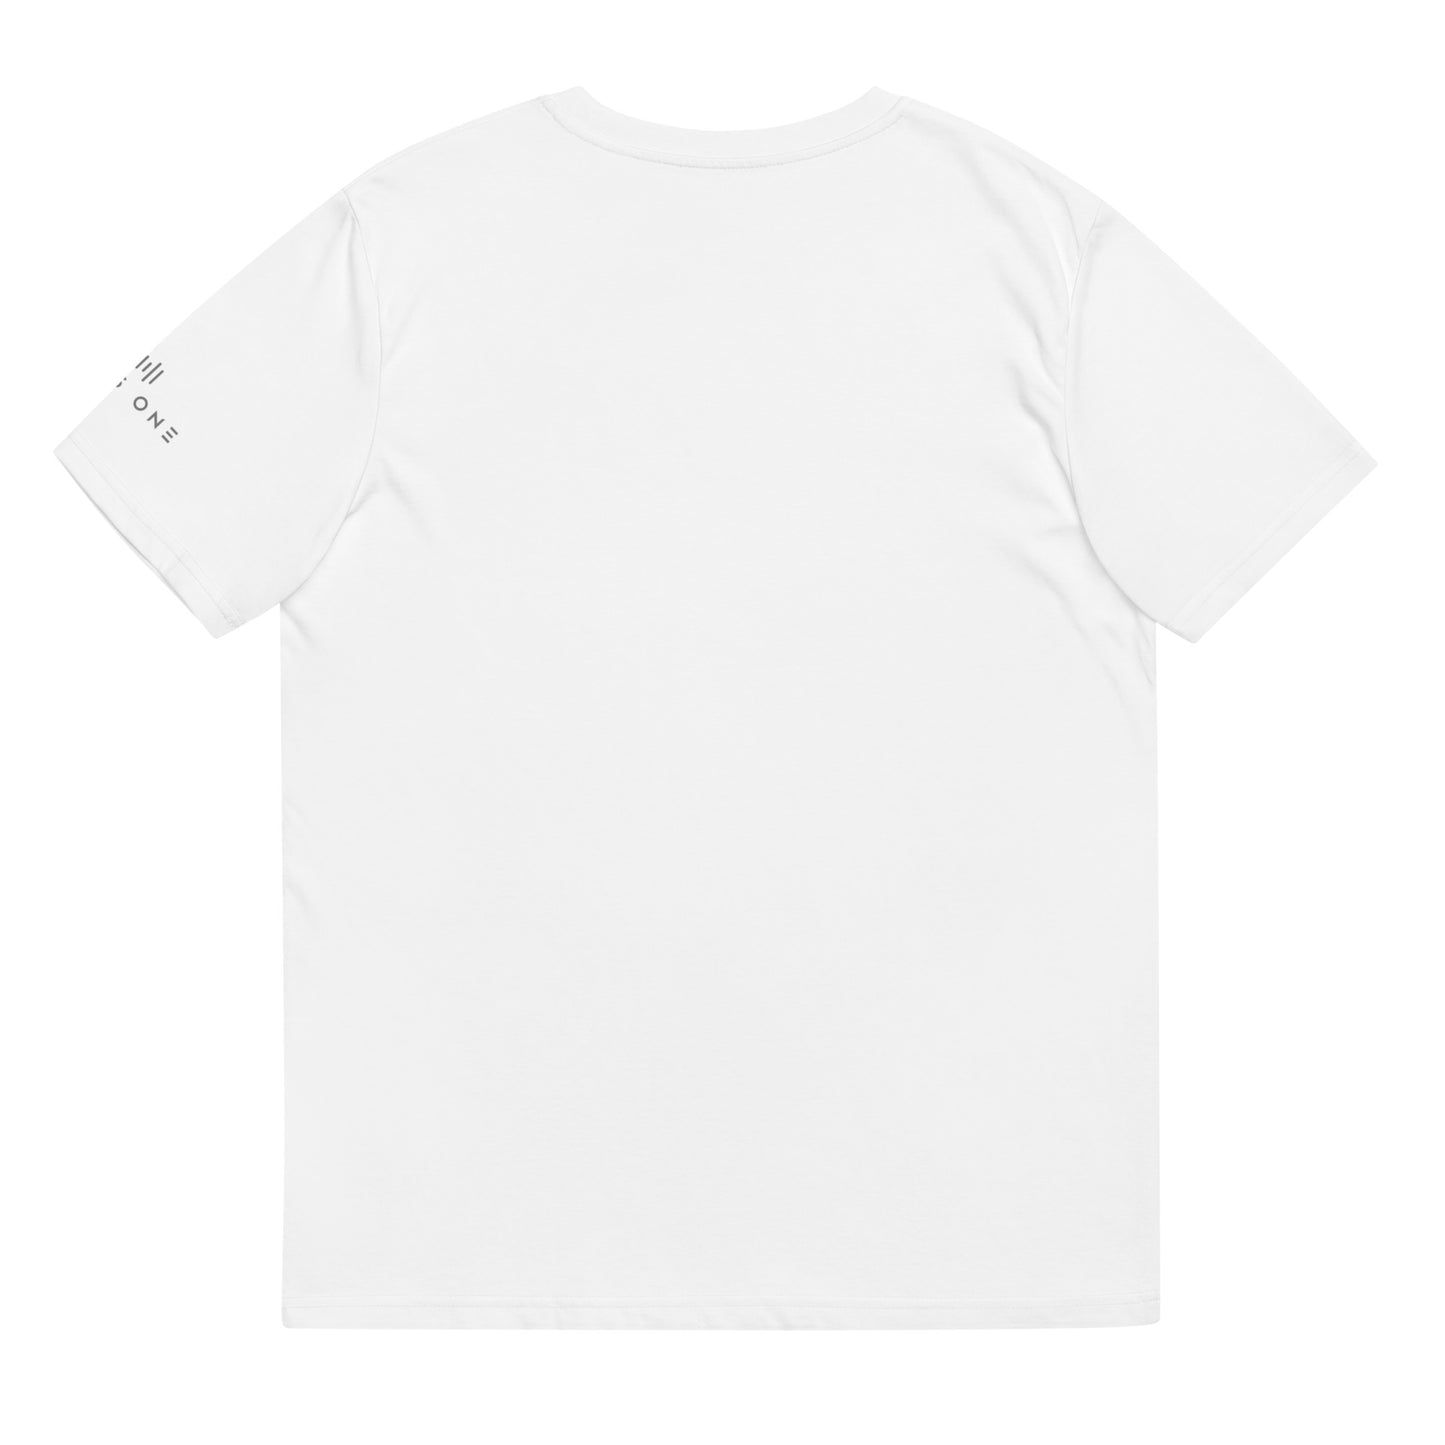 Tribe Mic-e (v3) Unisex organic cotton t-shirt